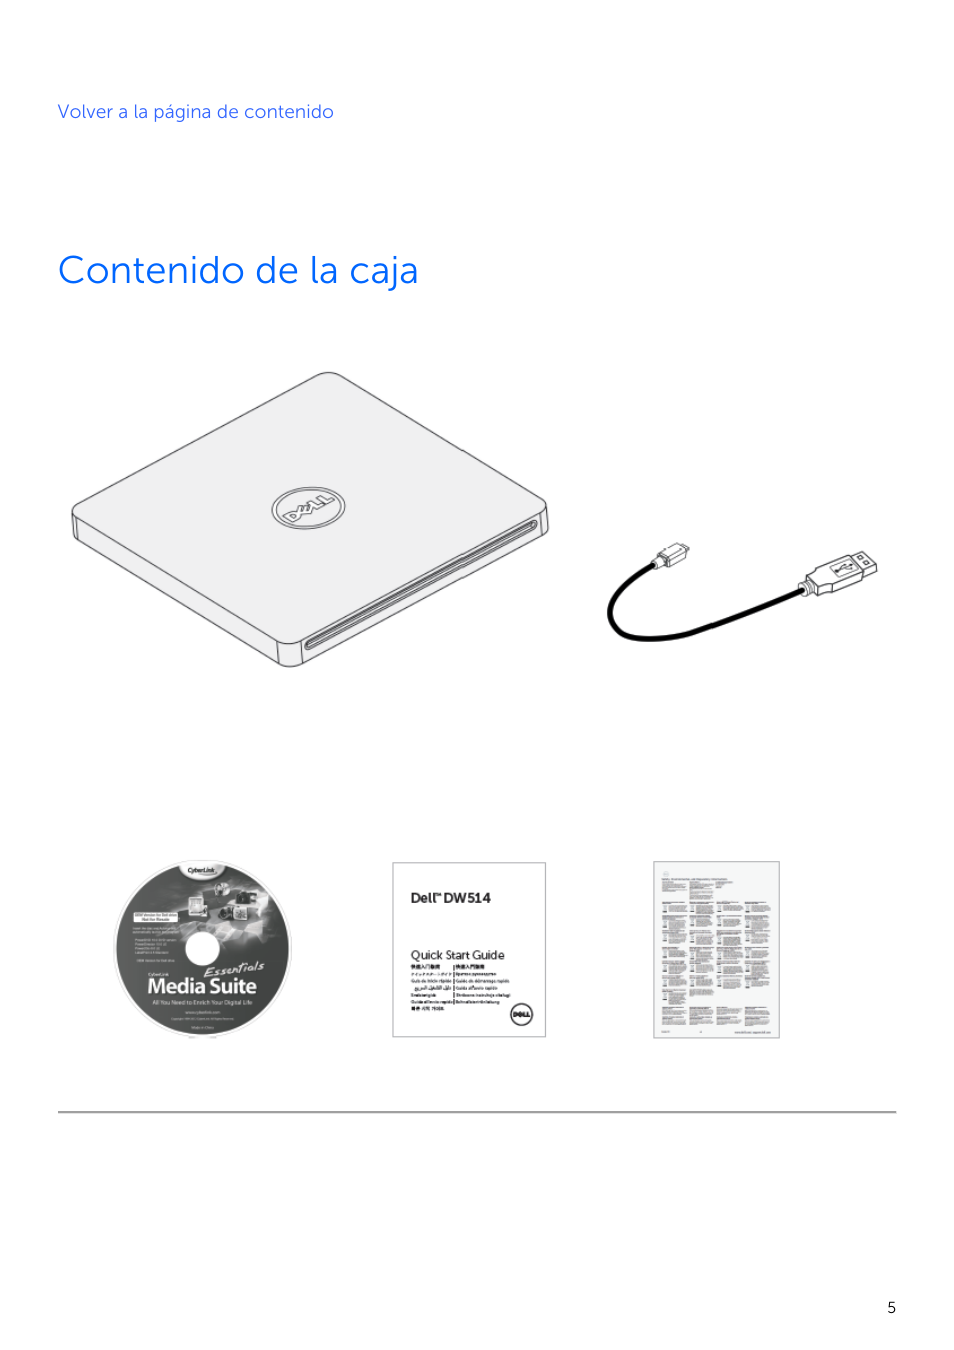 Dell External USB Ultra Slim DVD +/-RW Slot Drive DW514 Manual del usuario | Página 5 / 23